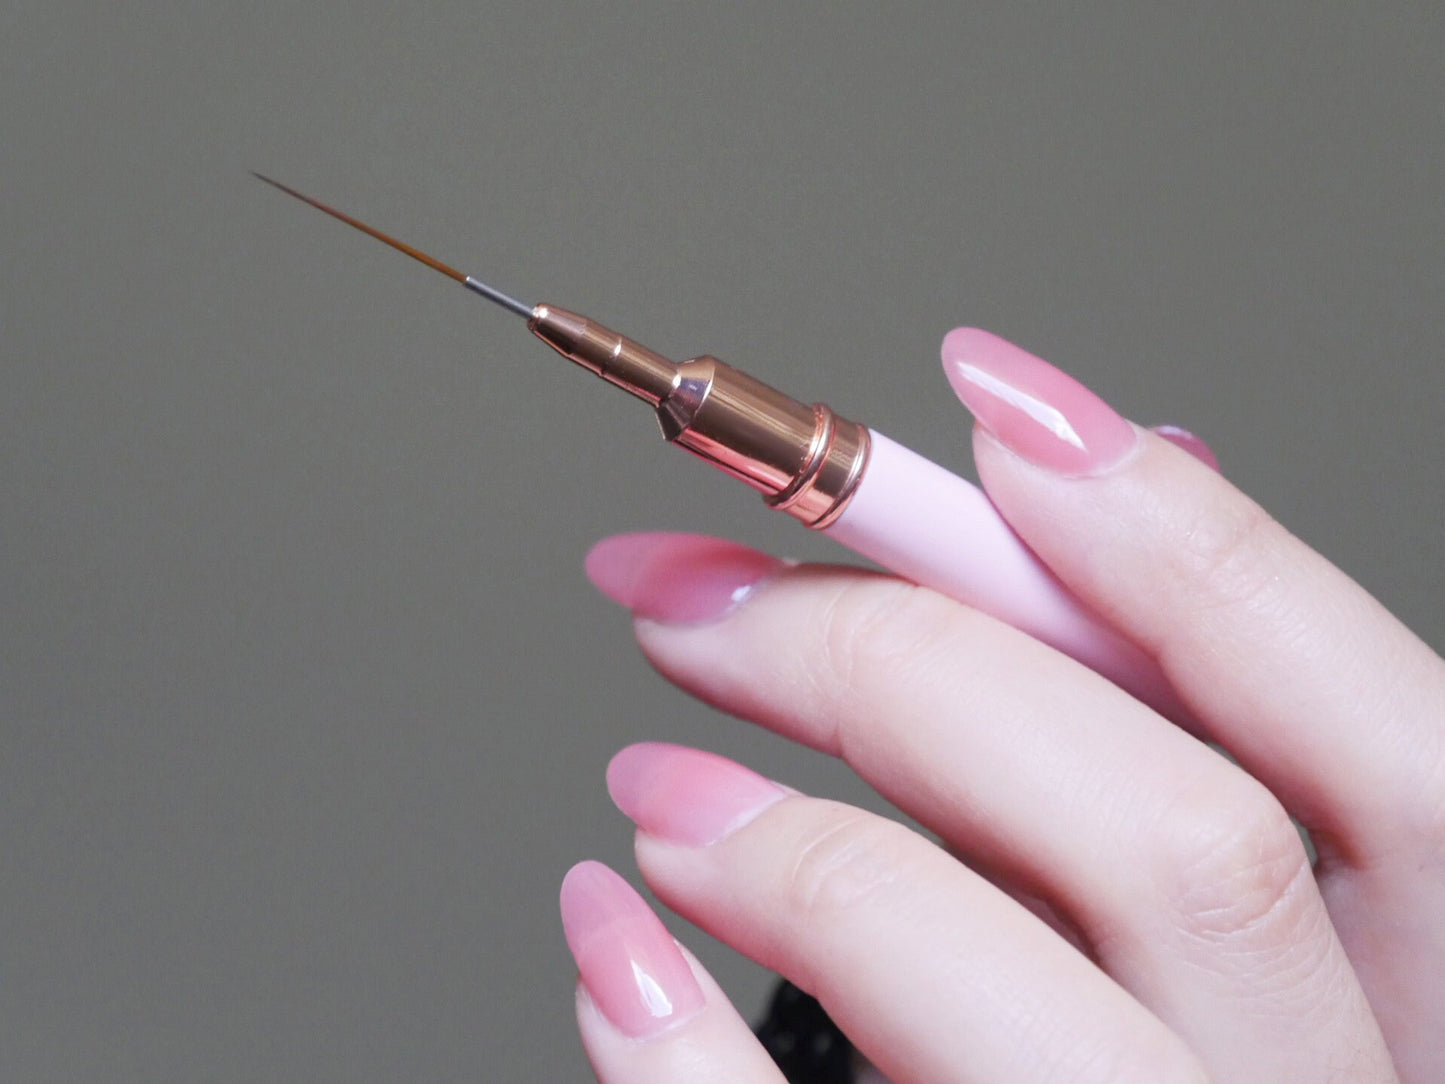 20mm Pink Nail Brush Detailing Striping Nail Art Pen/ liner Brush Painting Brushes/ Lining Painting Plaid brush Nail Supply